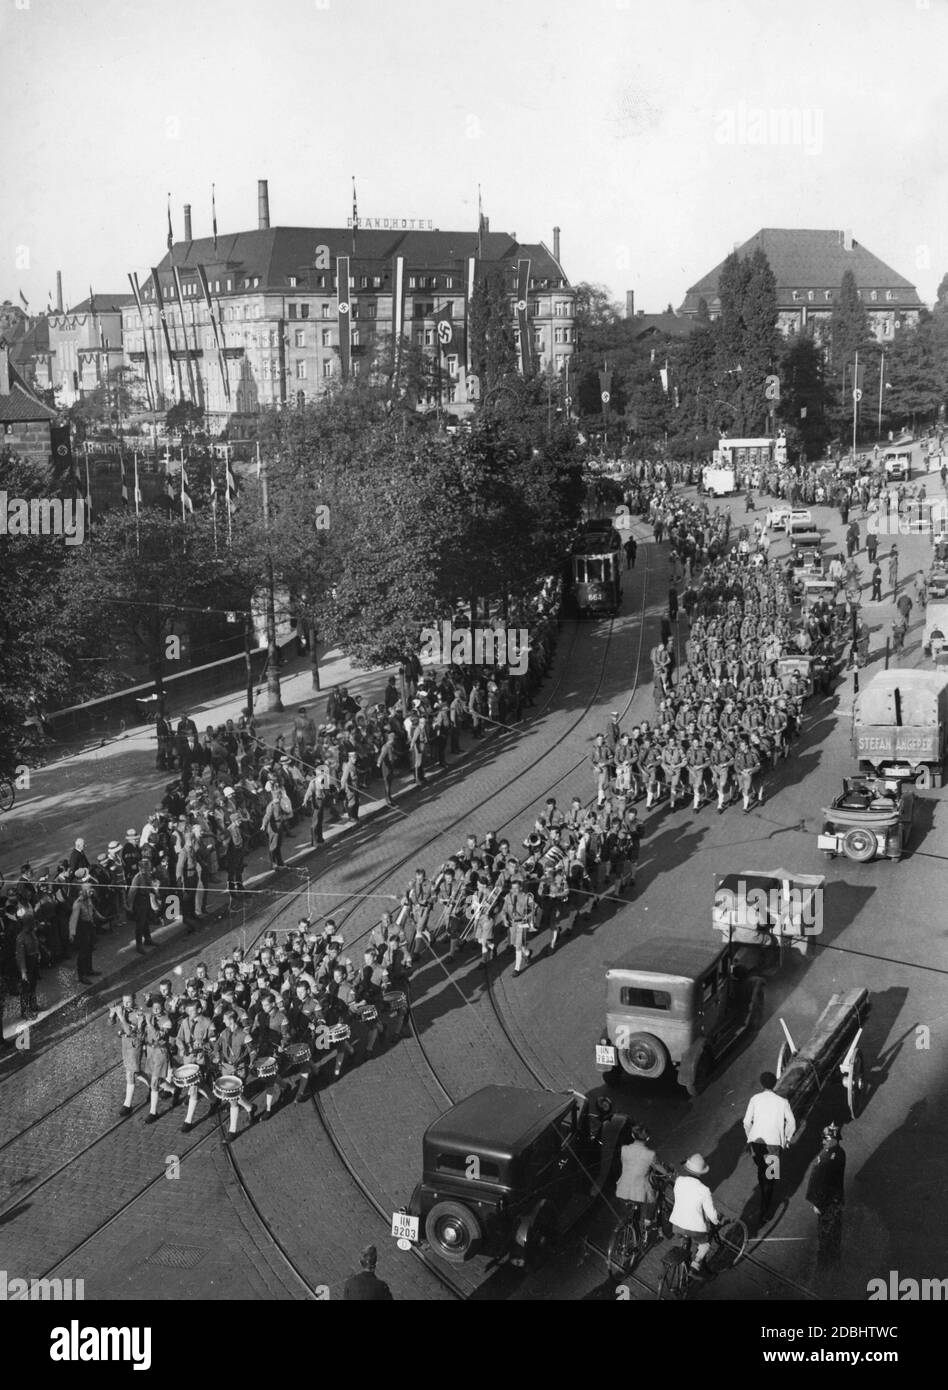 Blick auf die Parade der HJ-Formationen in Nürnberg, hier am Bahnhofsplatz. Vorne ist eine Musikabteilung mit Trommeln, Flöten und anderen Blasinstrumenten. Im Hintergrund das Grand Hotel Nürnberg. Stockfoto